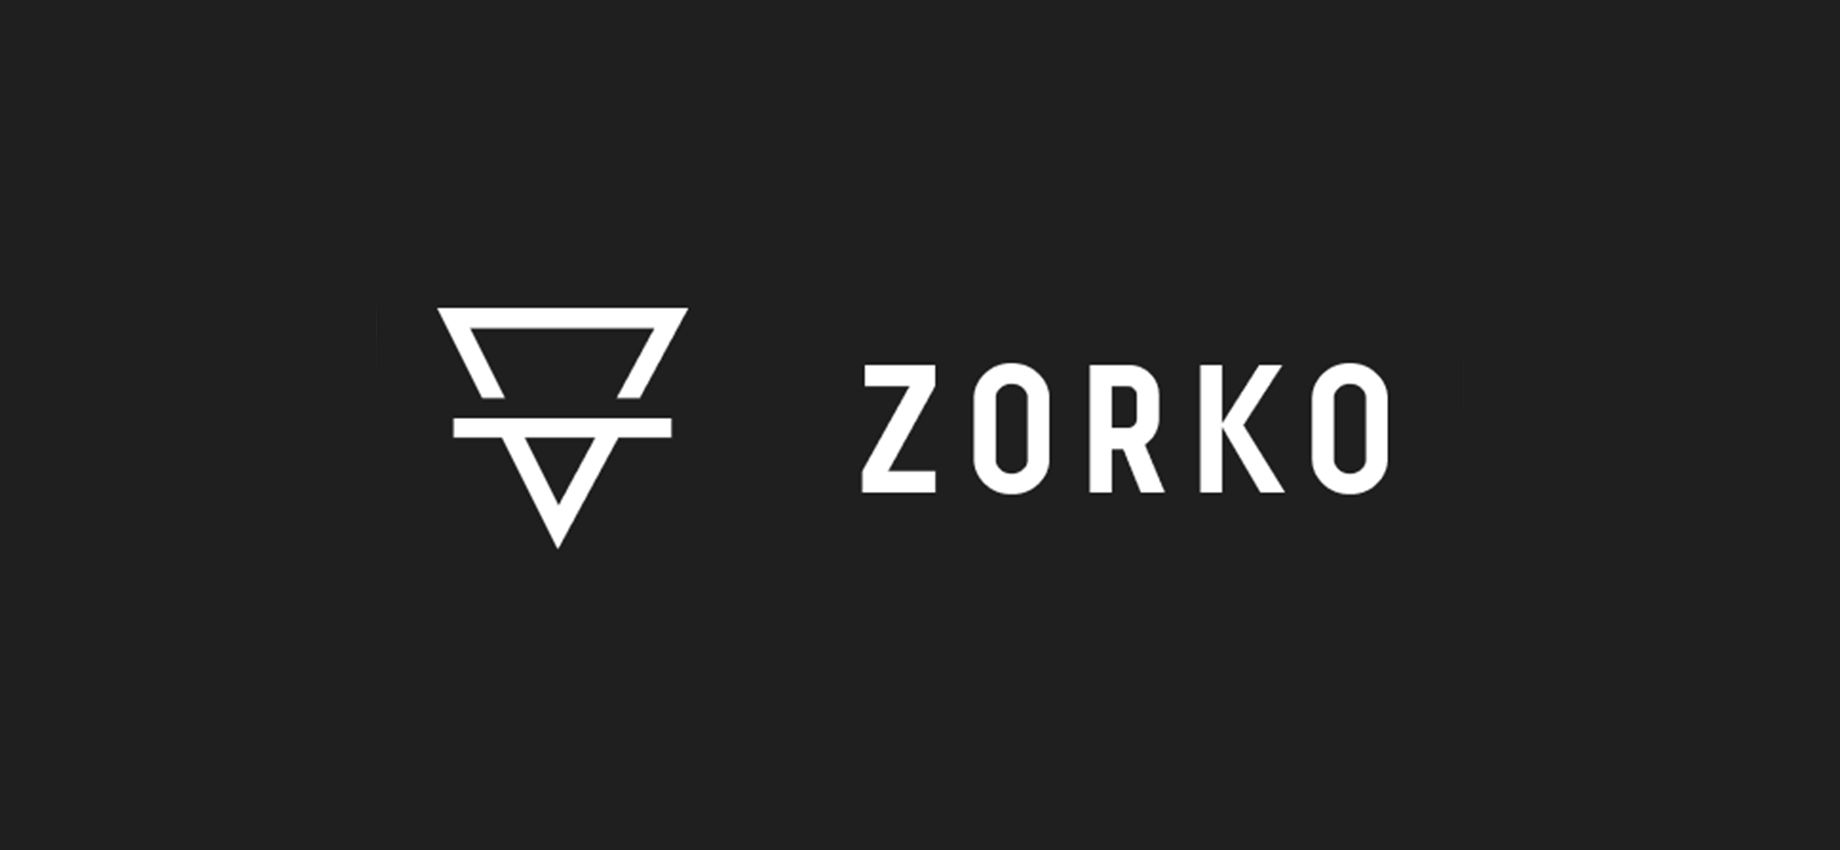 Как устроена новая платформа для вложений на pre-IPO Zorko